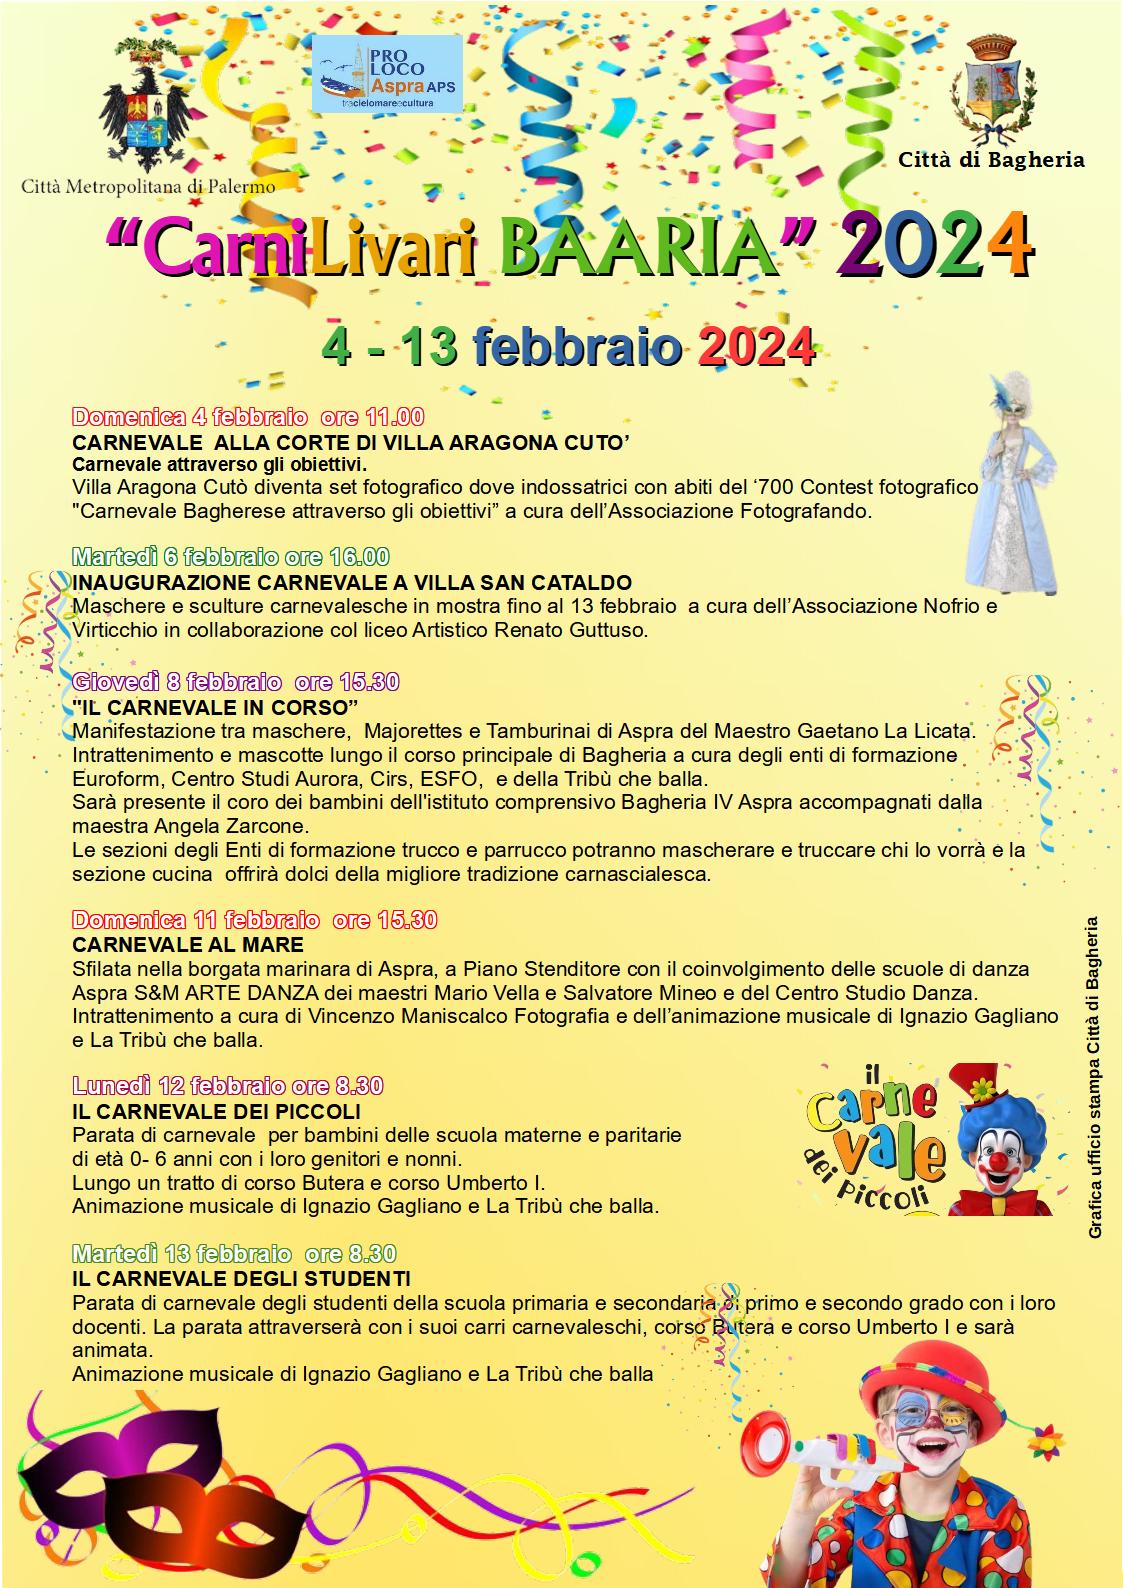 Carnilivari Baaria 2024: "Il carnevale in corso". Giovedì 8 manifestazione su corso Umberto I.